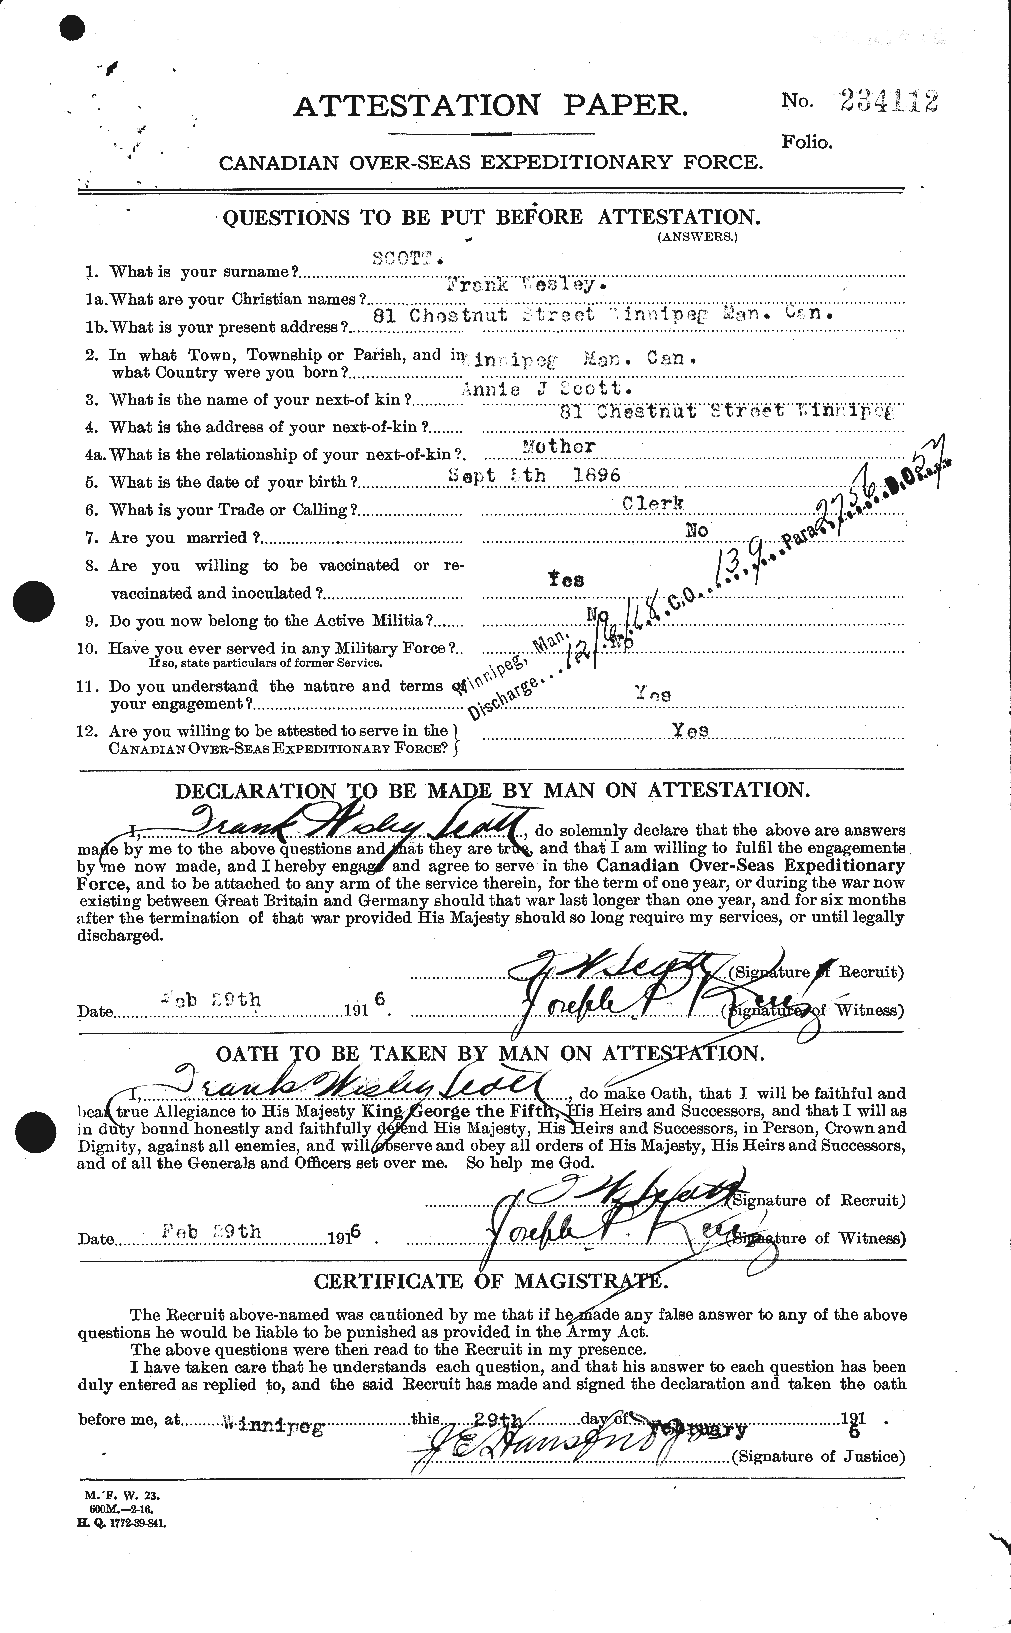 Dossiers du Personnel de la Première Guerre mondiale - CEC 084688a